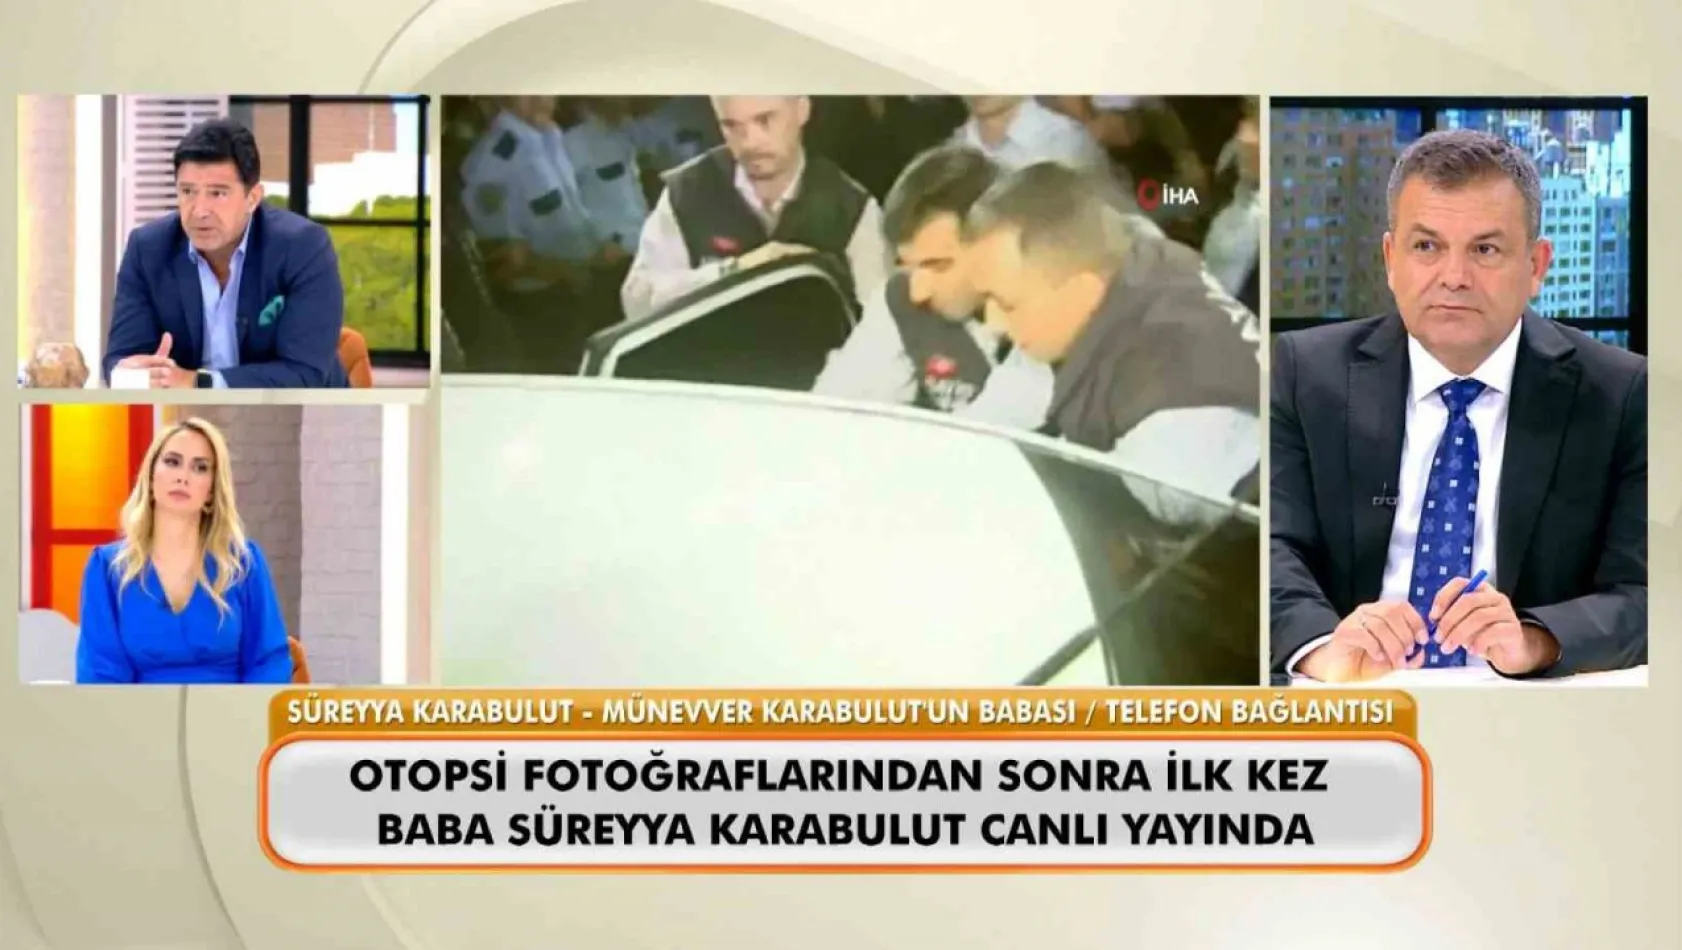 Münevver Karabulut'un babası, Cem Garipoğlu'nun otopsi fotoğraflarını yorumladı